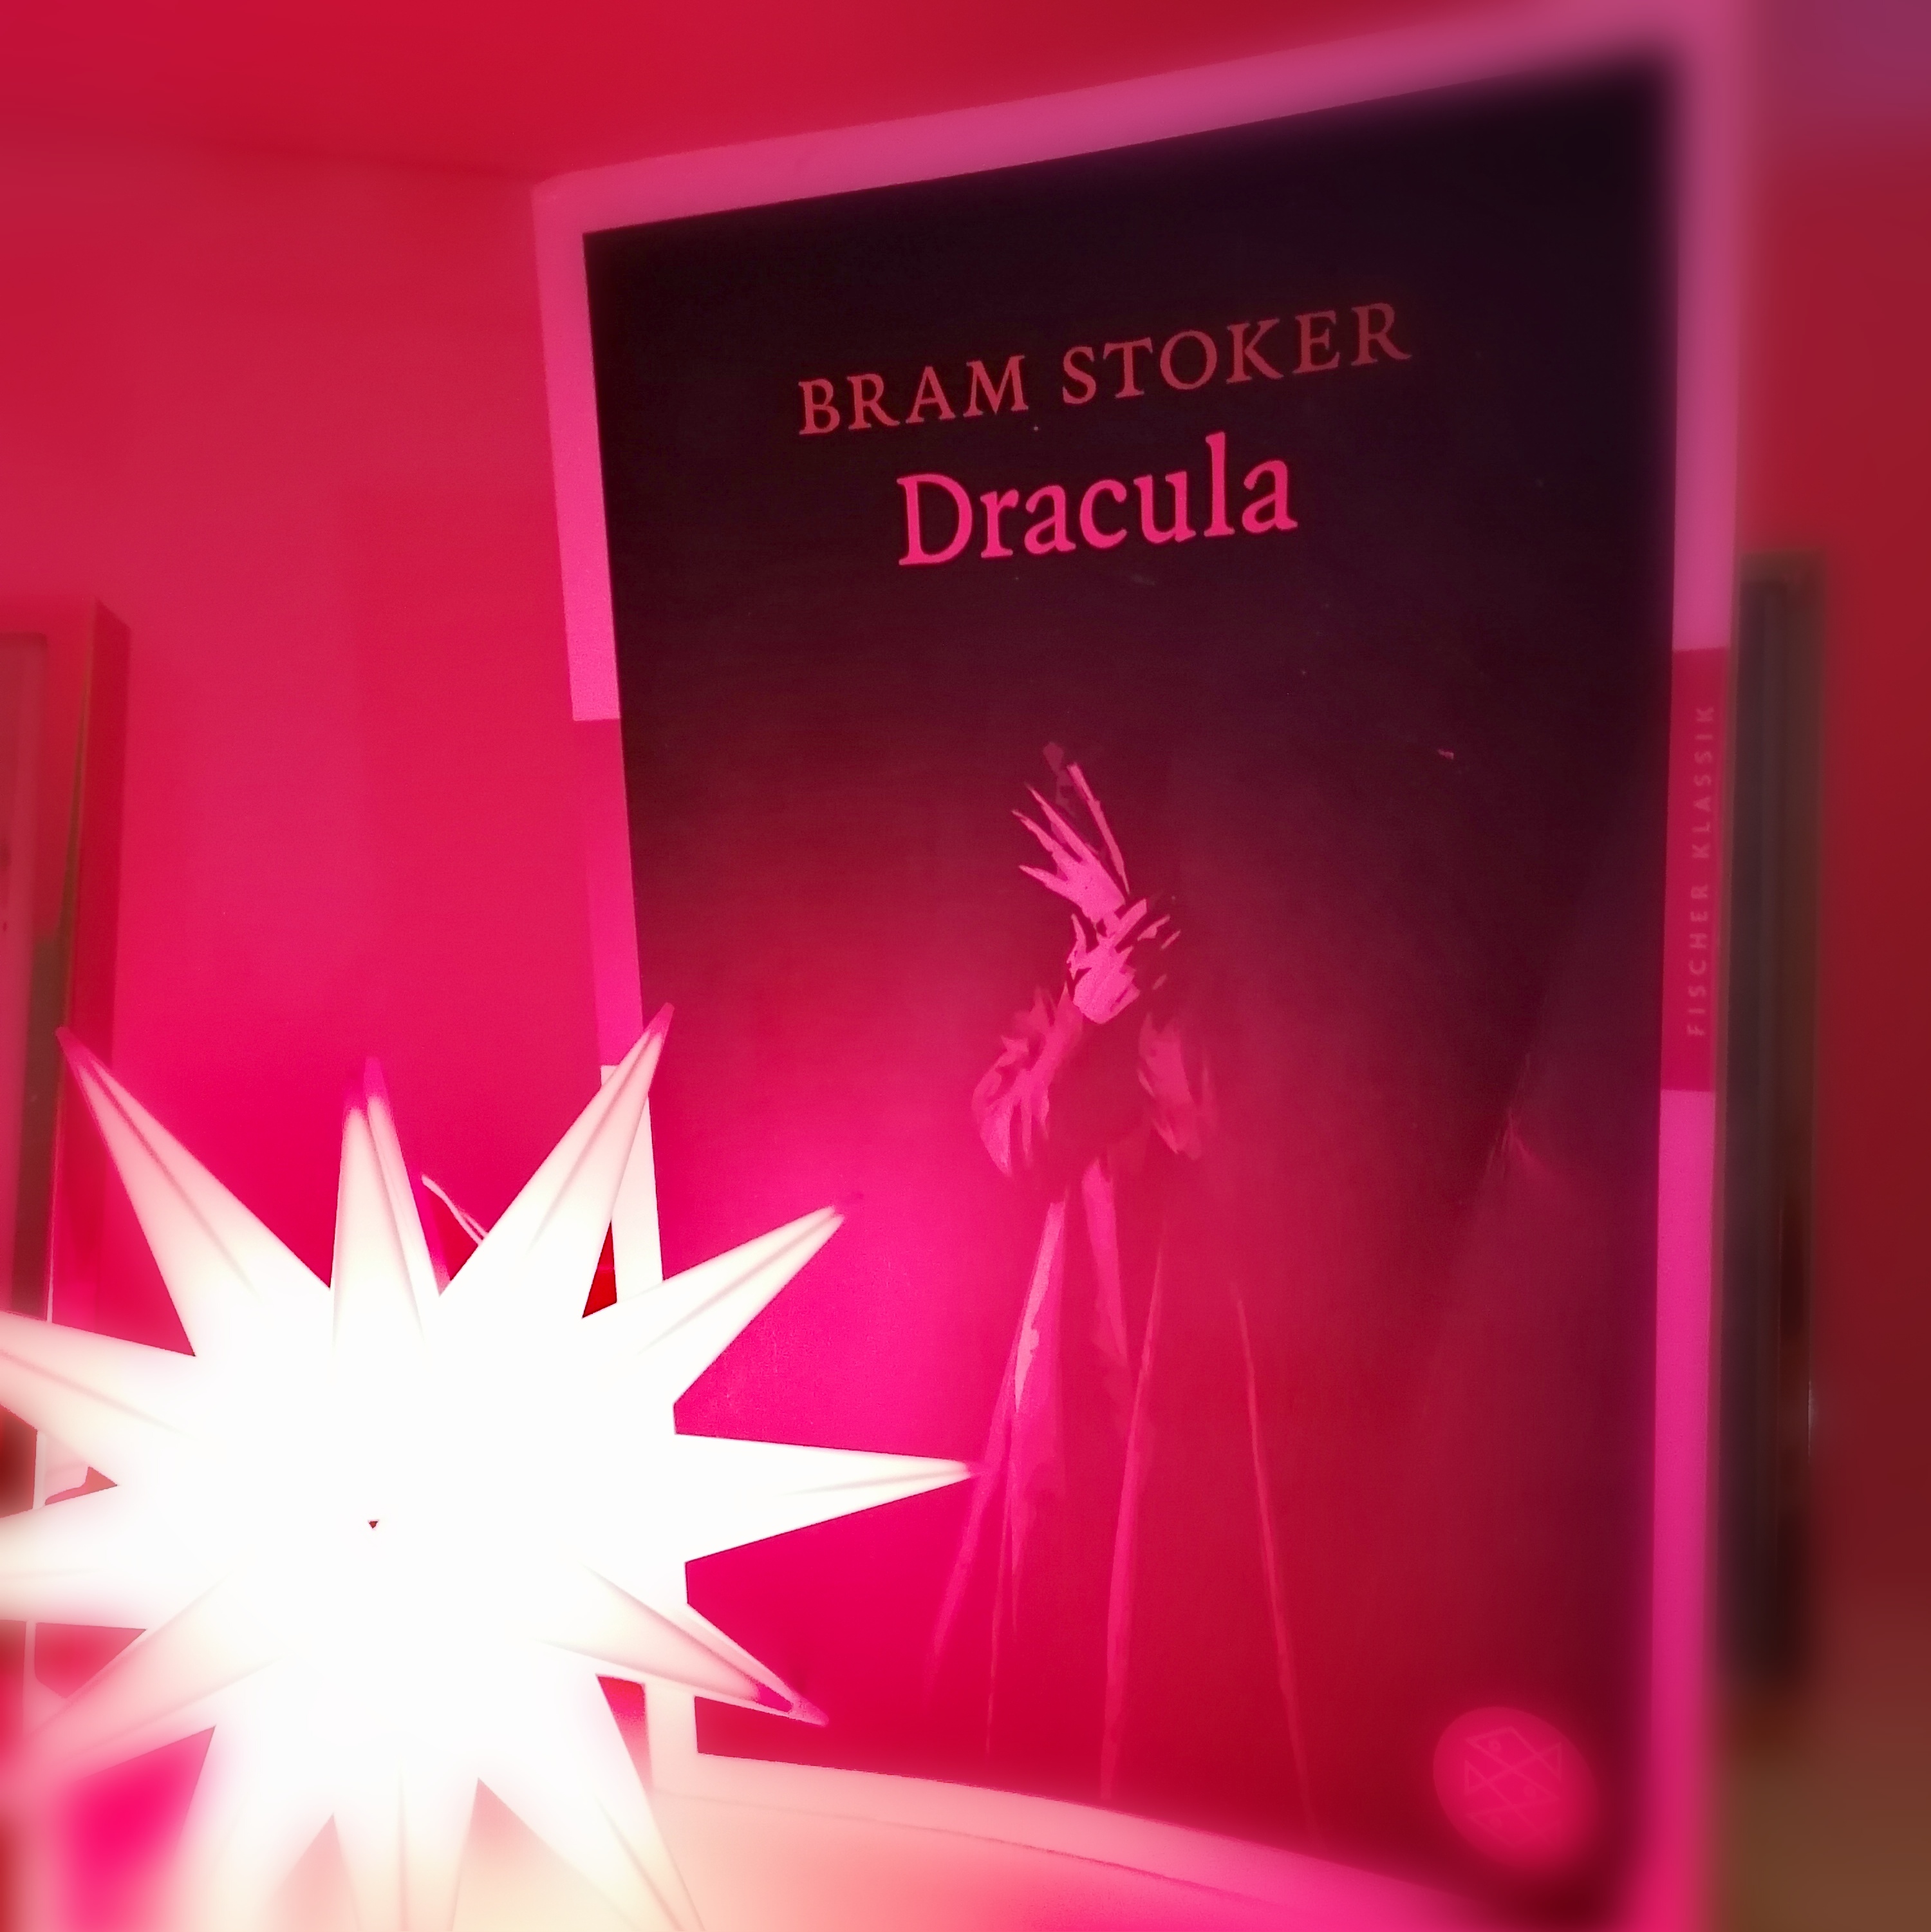 Blick ins Buch - "Dracula" von Bram Stoker - Wo ist er denn nu, der Dracula?